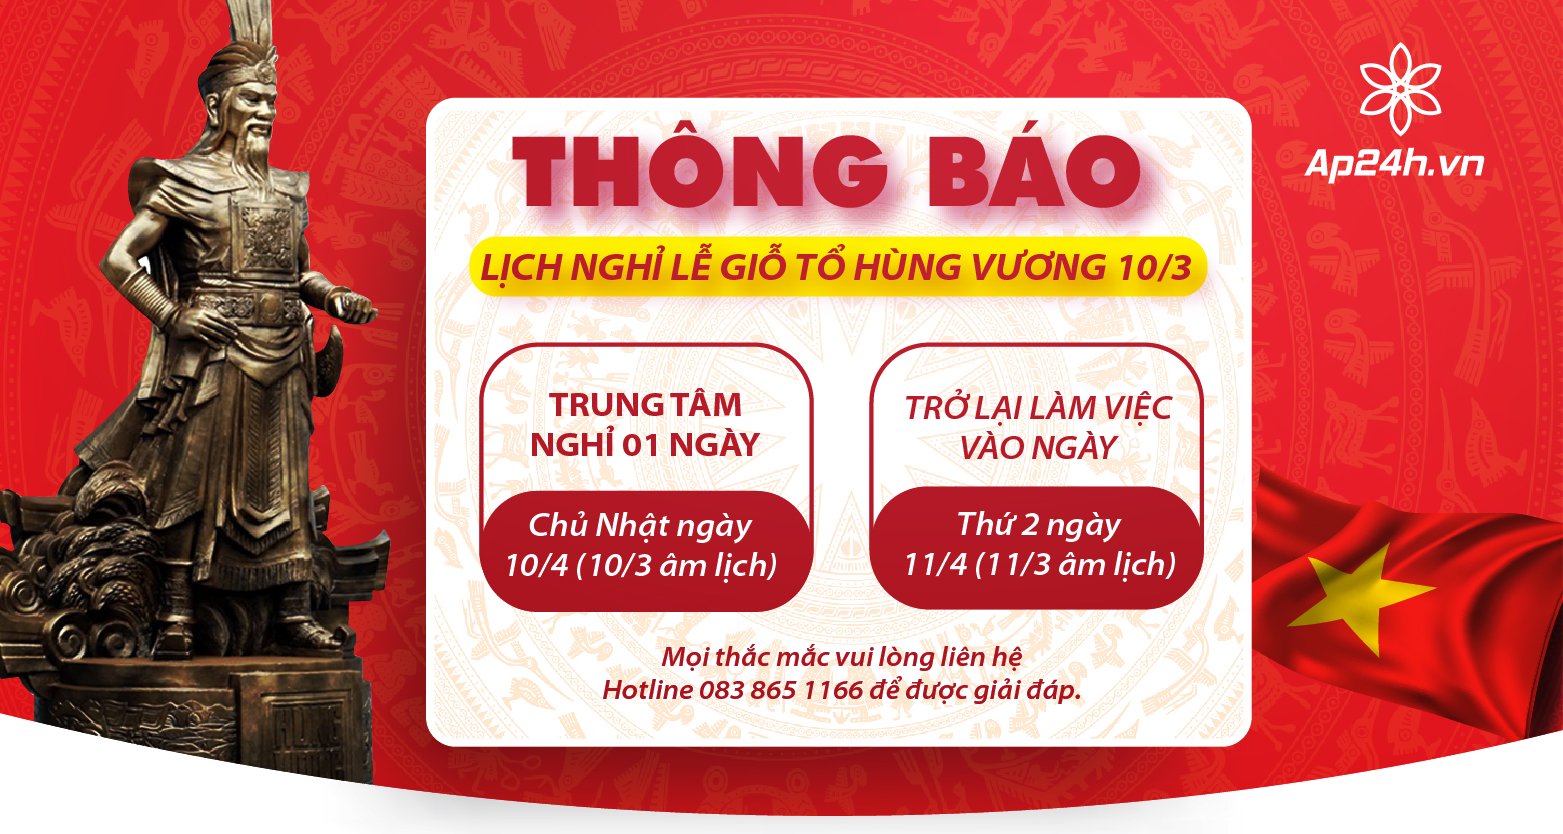 Thong-bao-lich-nghi-Gio-To-Hung-Vuong